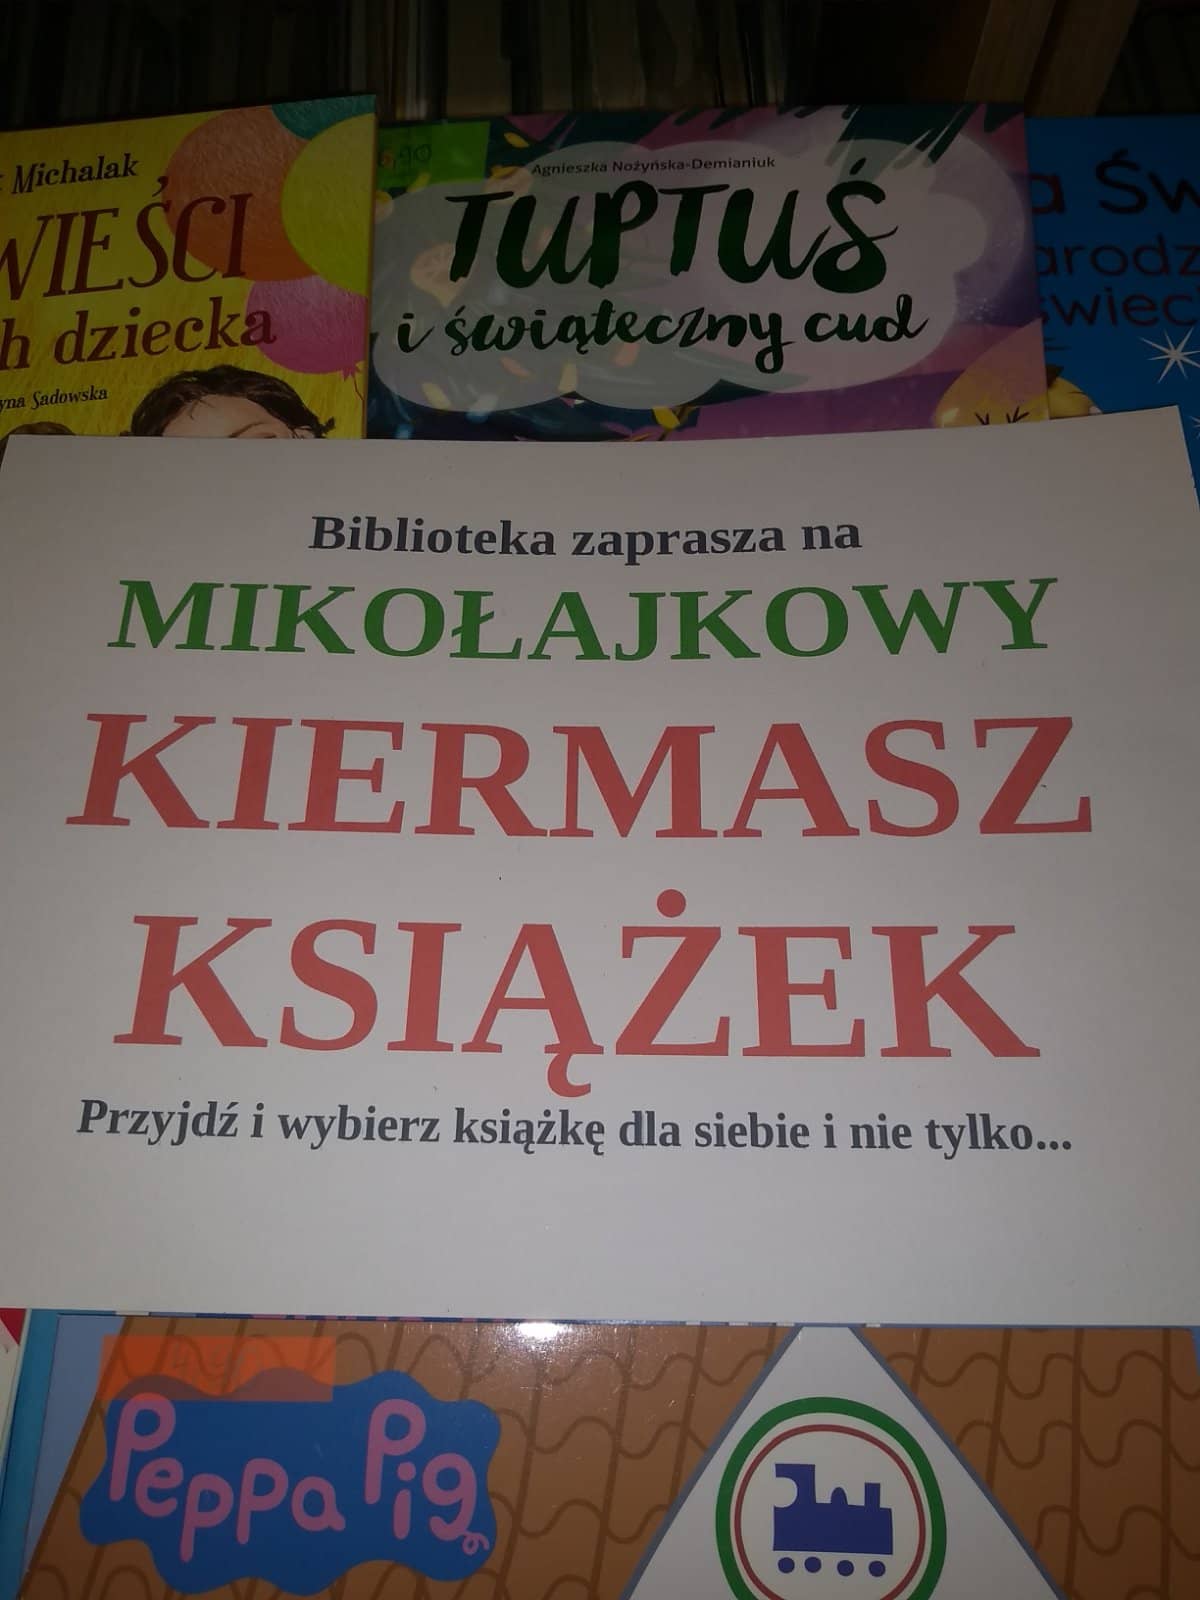 You are currently viewing Mikołajkowy kiermasz książek